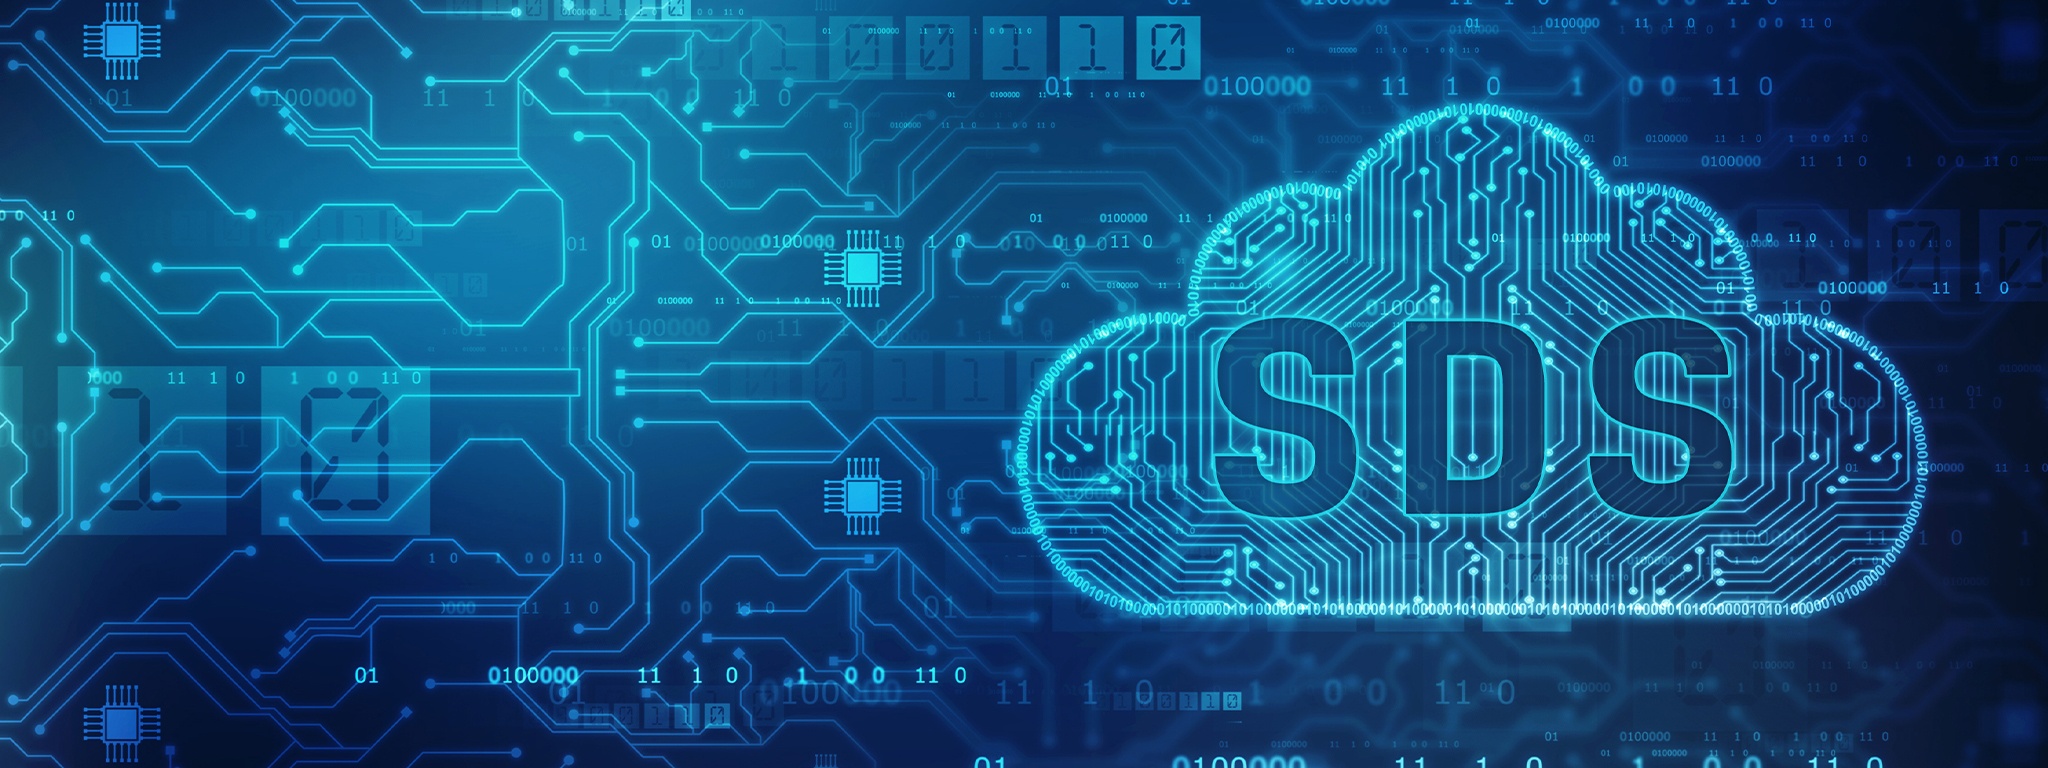 Silhouette d’un nuage avec les lettres SDS au-dessus d’une image de tracés et de puces sur un circuit imprimé